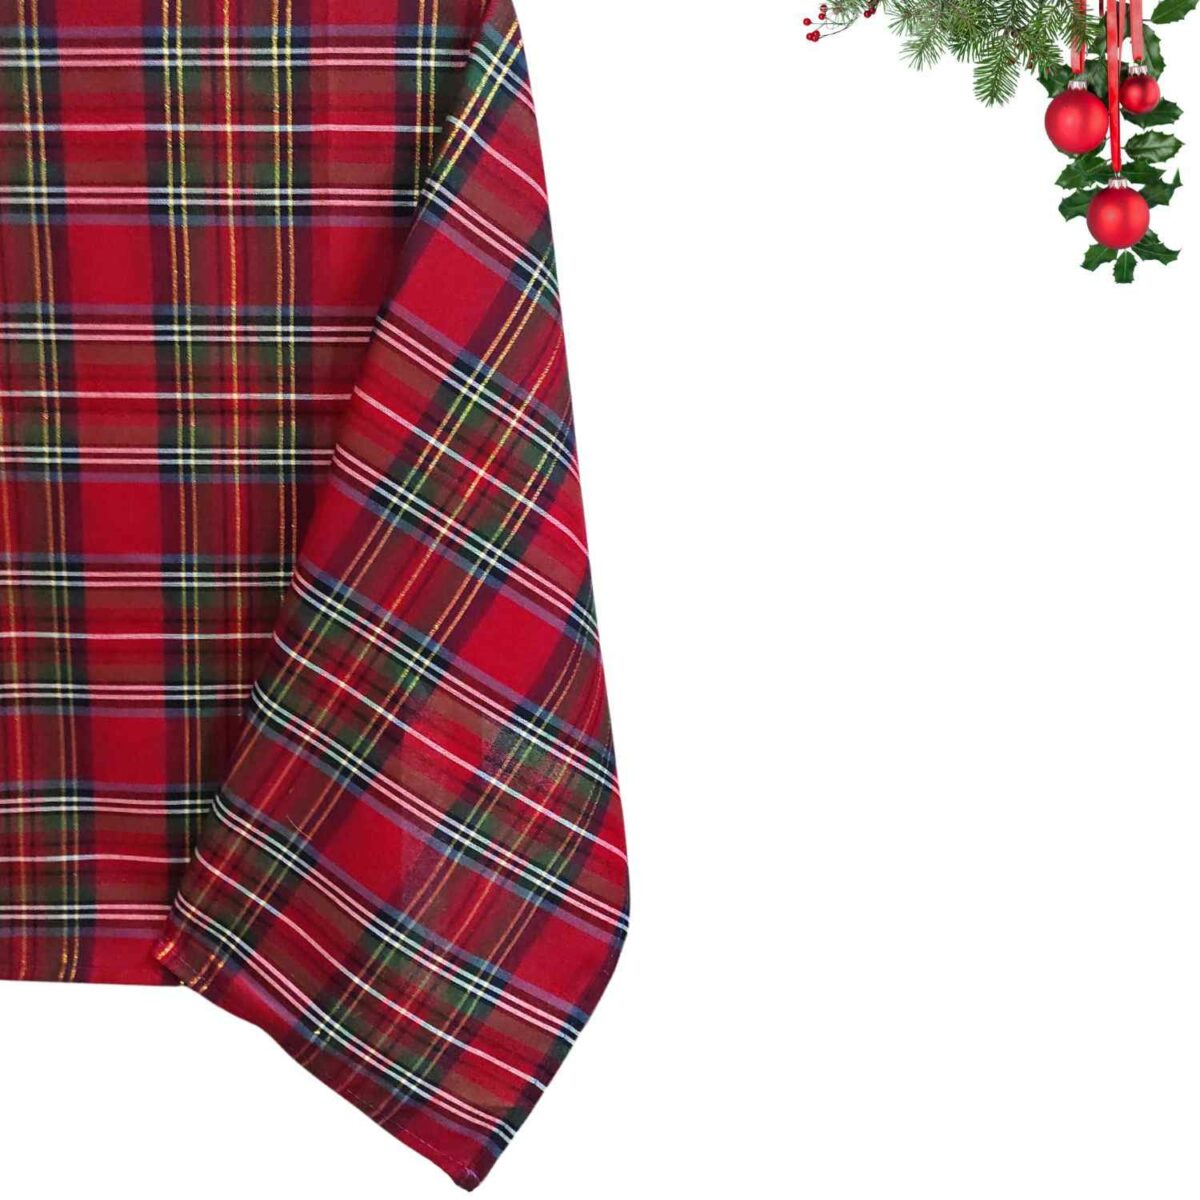 tartan-filo-lurex-oro-tovaglia-puro-cotone-made-in-italy-scozzese-natalizia-rossa-dettaglio